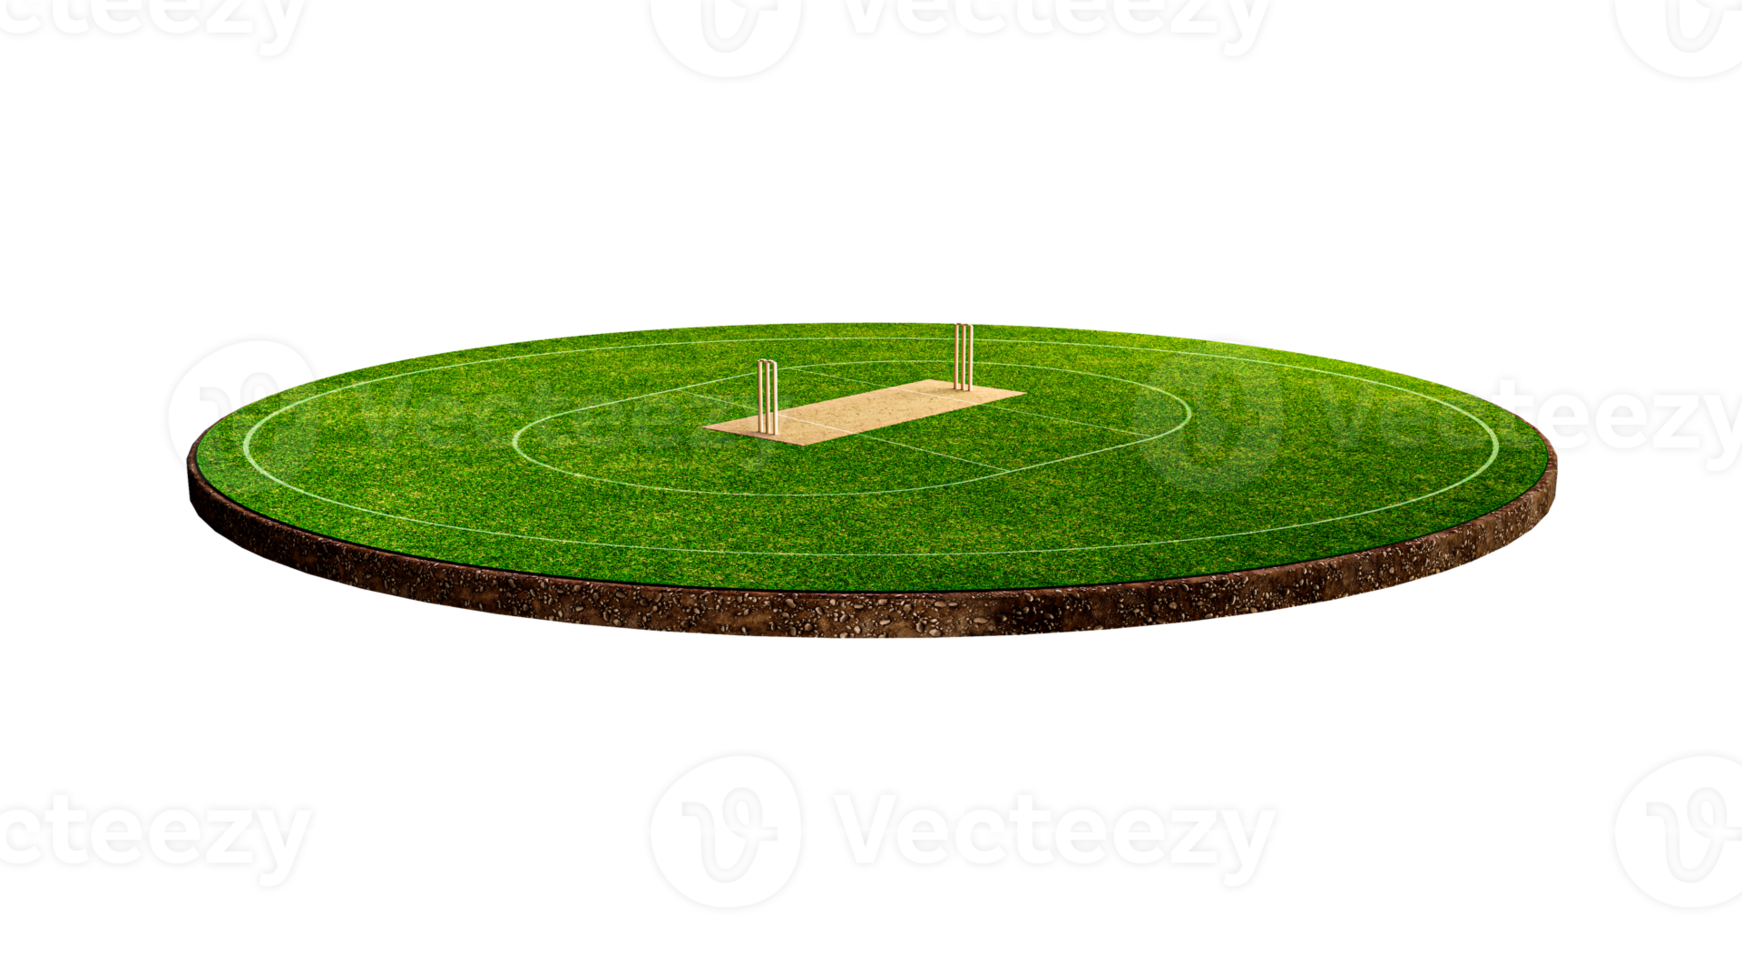 vue de face du stade de cricket sur le terrain de cricket ou le terrain de jeu de sport de balle, le stade d'herbe ou l'arène circulaire pour la série de cricket, la pelouse verte ou le terrain pour le batteur, le quilleur. illustration 3d de champ extérieur png